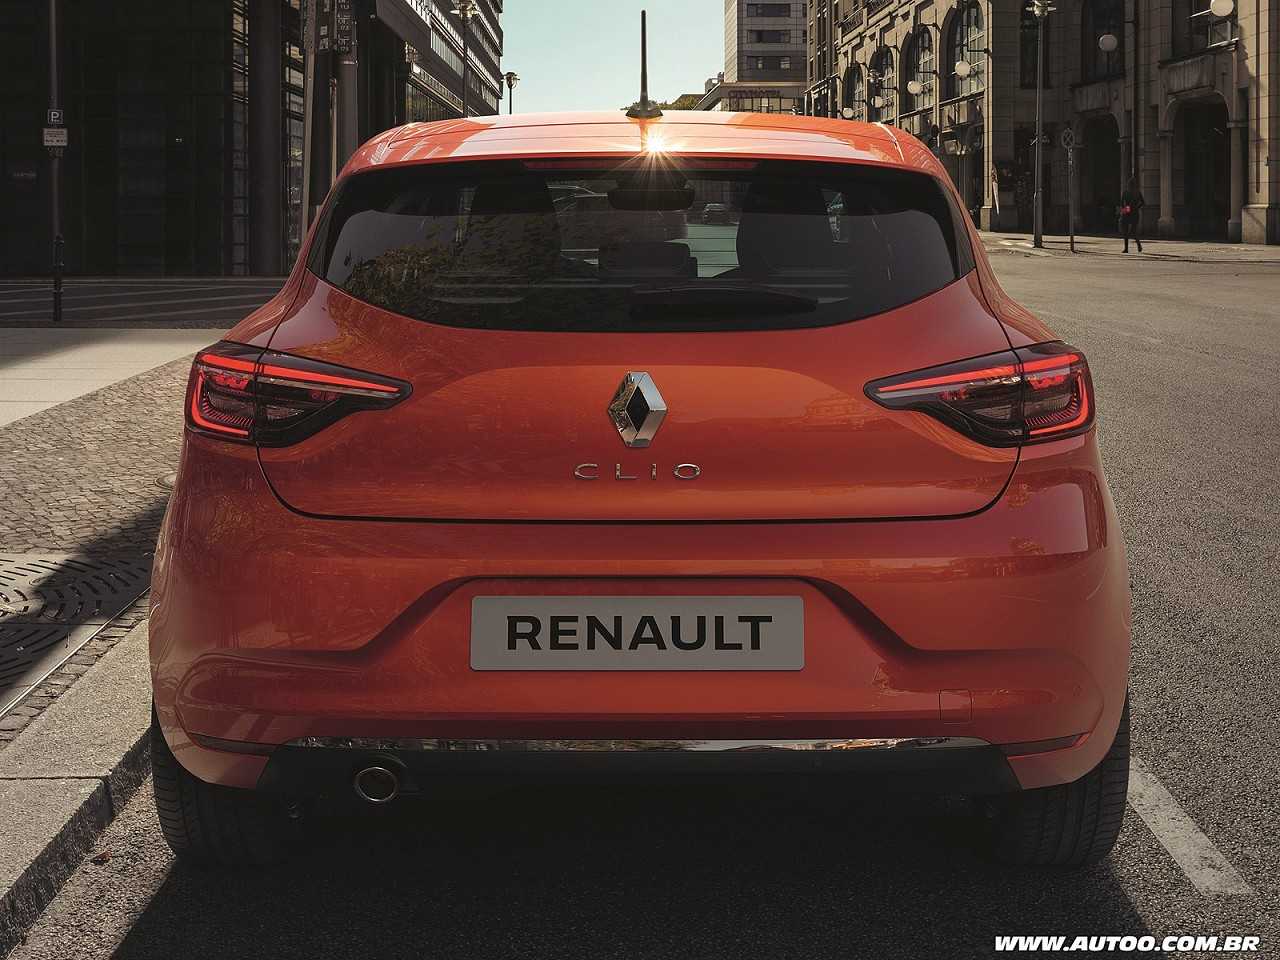 RenaultClio 2019 - traseira